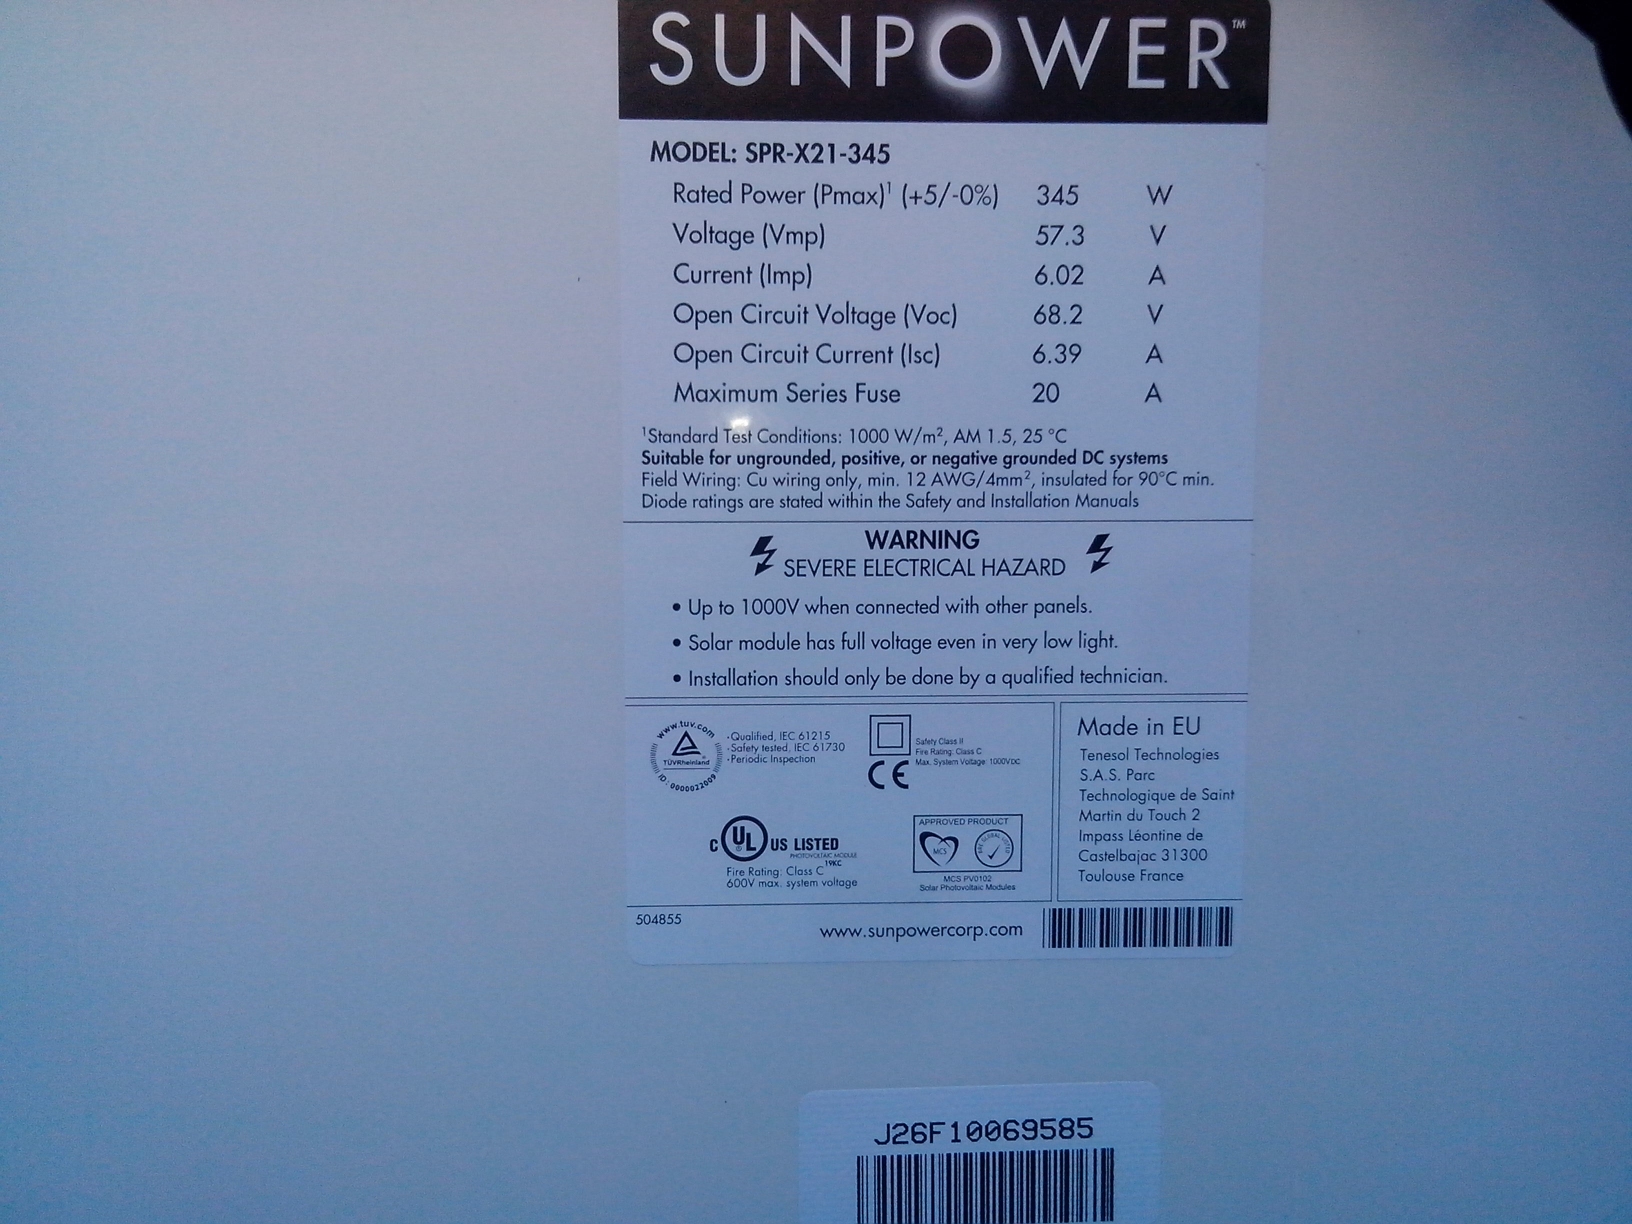 Impianto Fotovoltaico in Scambio Sul posto SunPower Lightland X21 Ferrara Emilia Romagna Retro Label